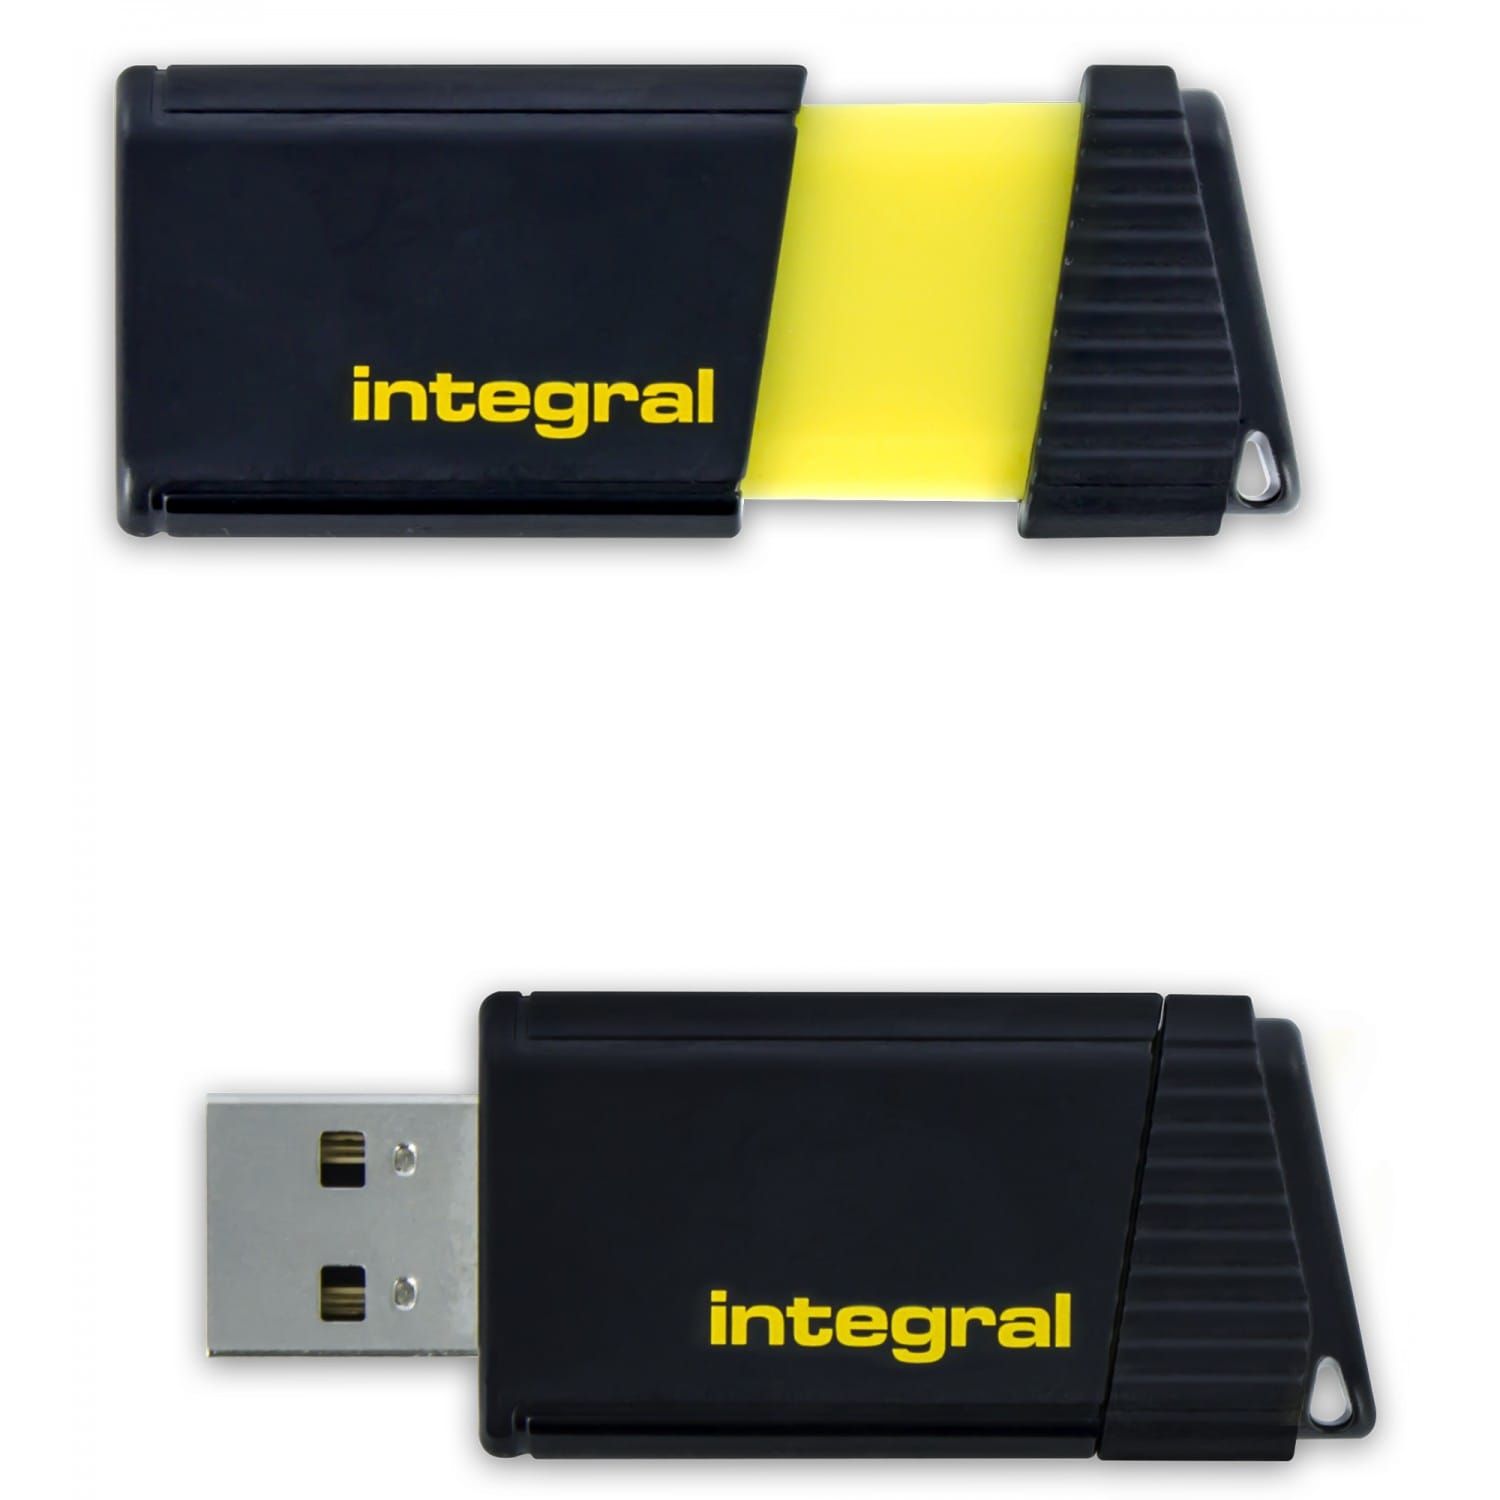 Clé USB, Motif de Chien Fantaisie U Disk USB 2.0 Drive Memory